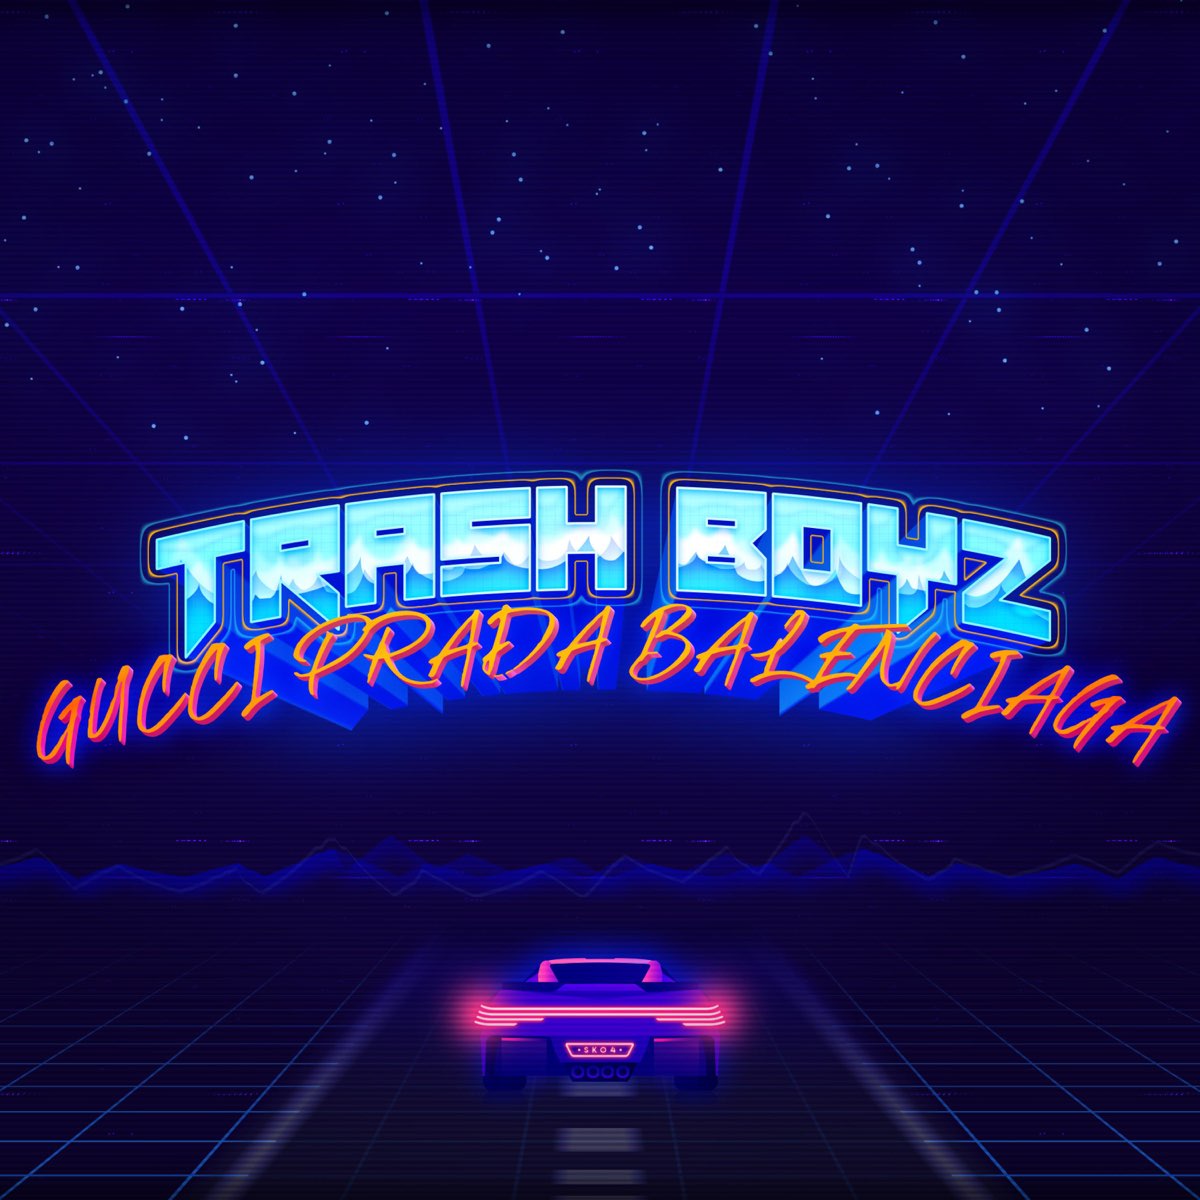 Gucci Prada Balenciaga - Single - Album by Trash Boyz - Apple Music